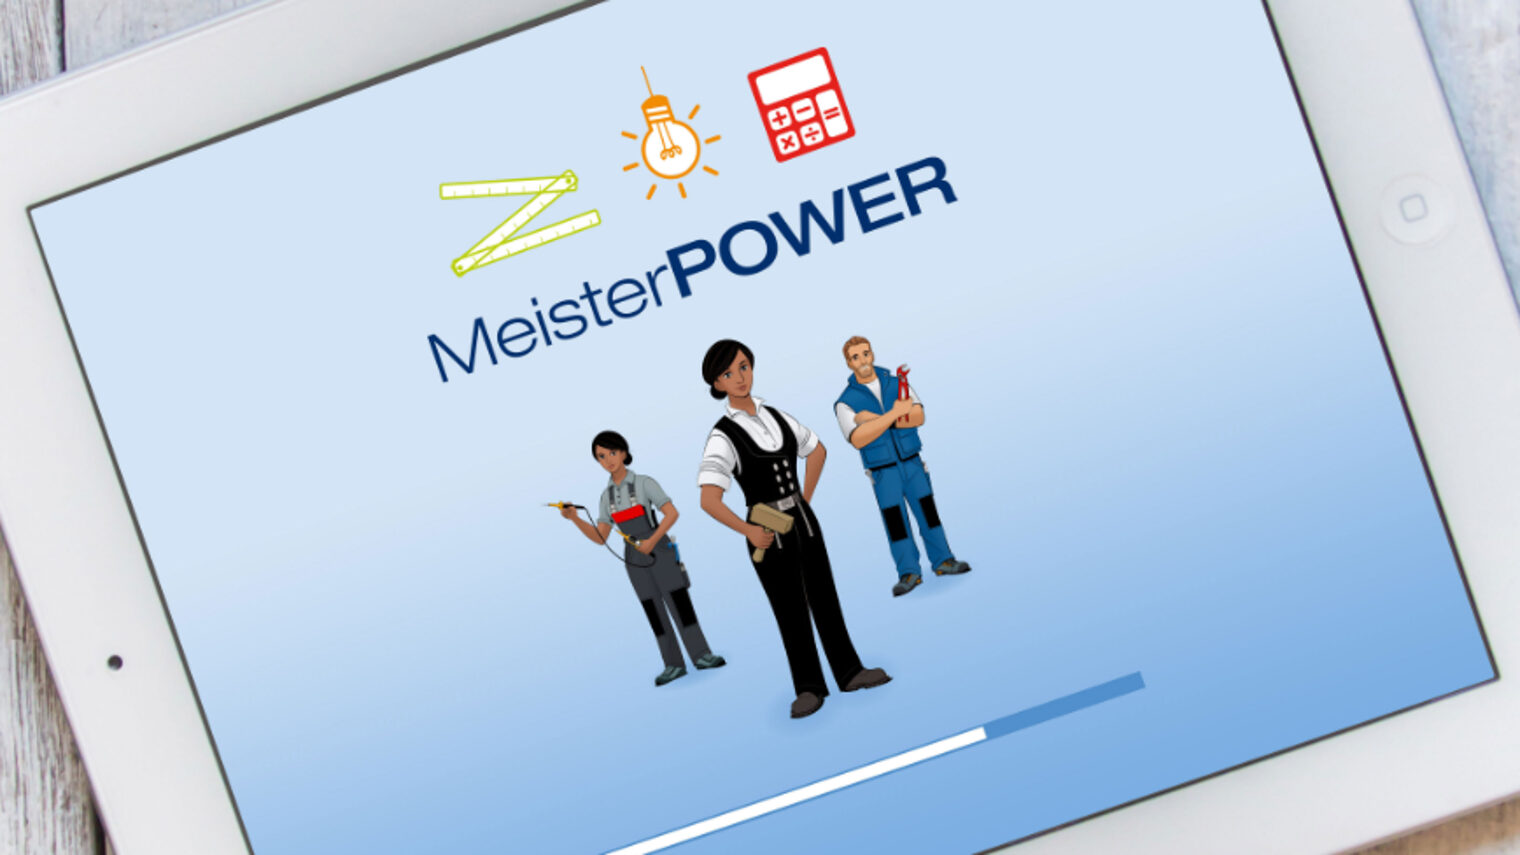 Startbildschirm der Lernsoftware Meisterpower. Drei Charaktere aus den Handwerksberufen Zimmerer, Anlagenmechaniker und Elektroniker